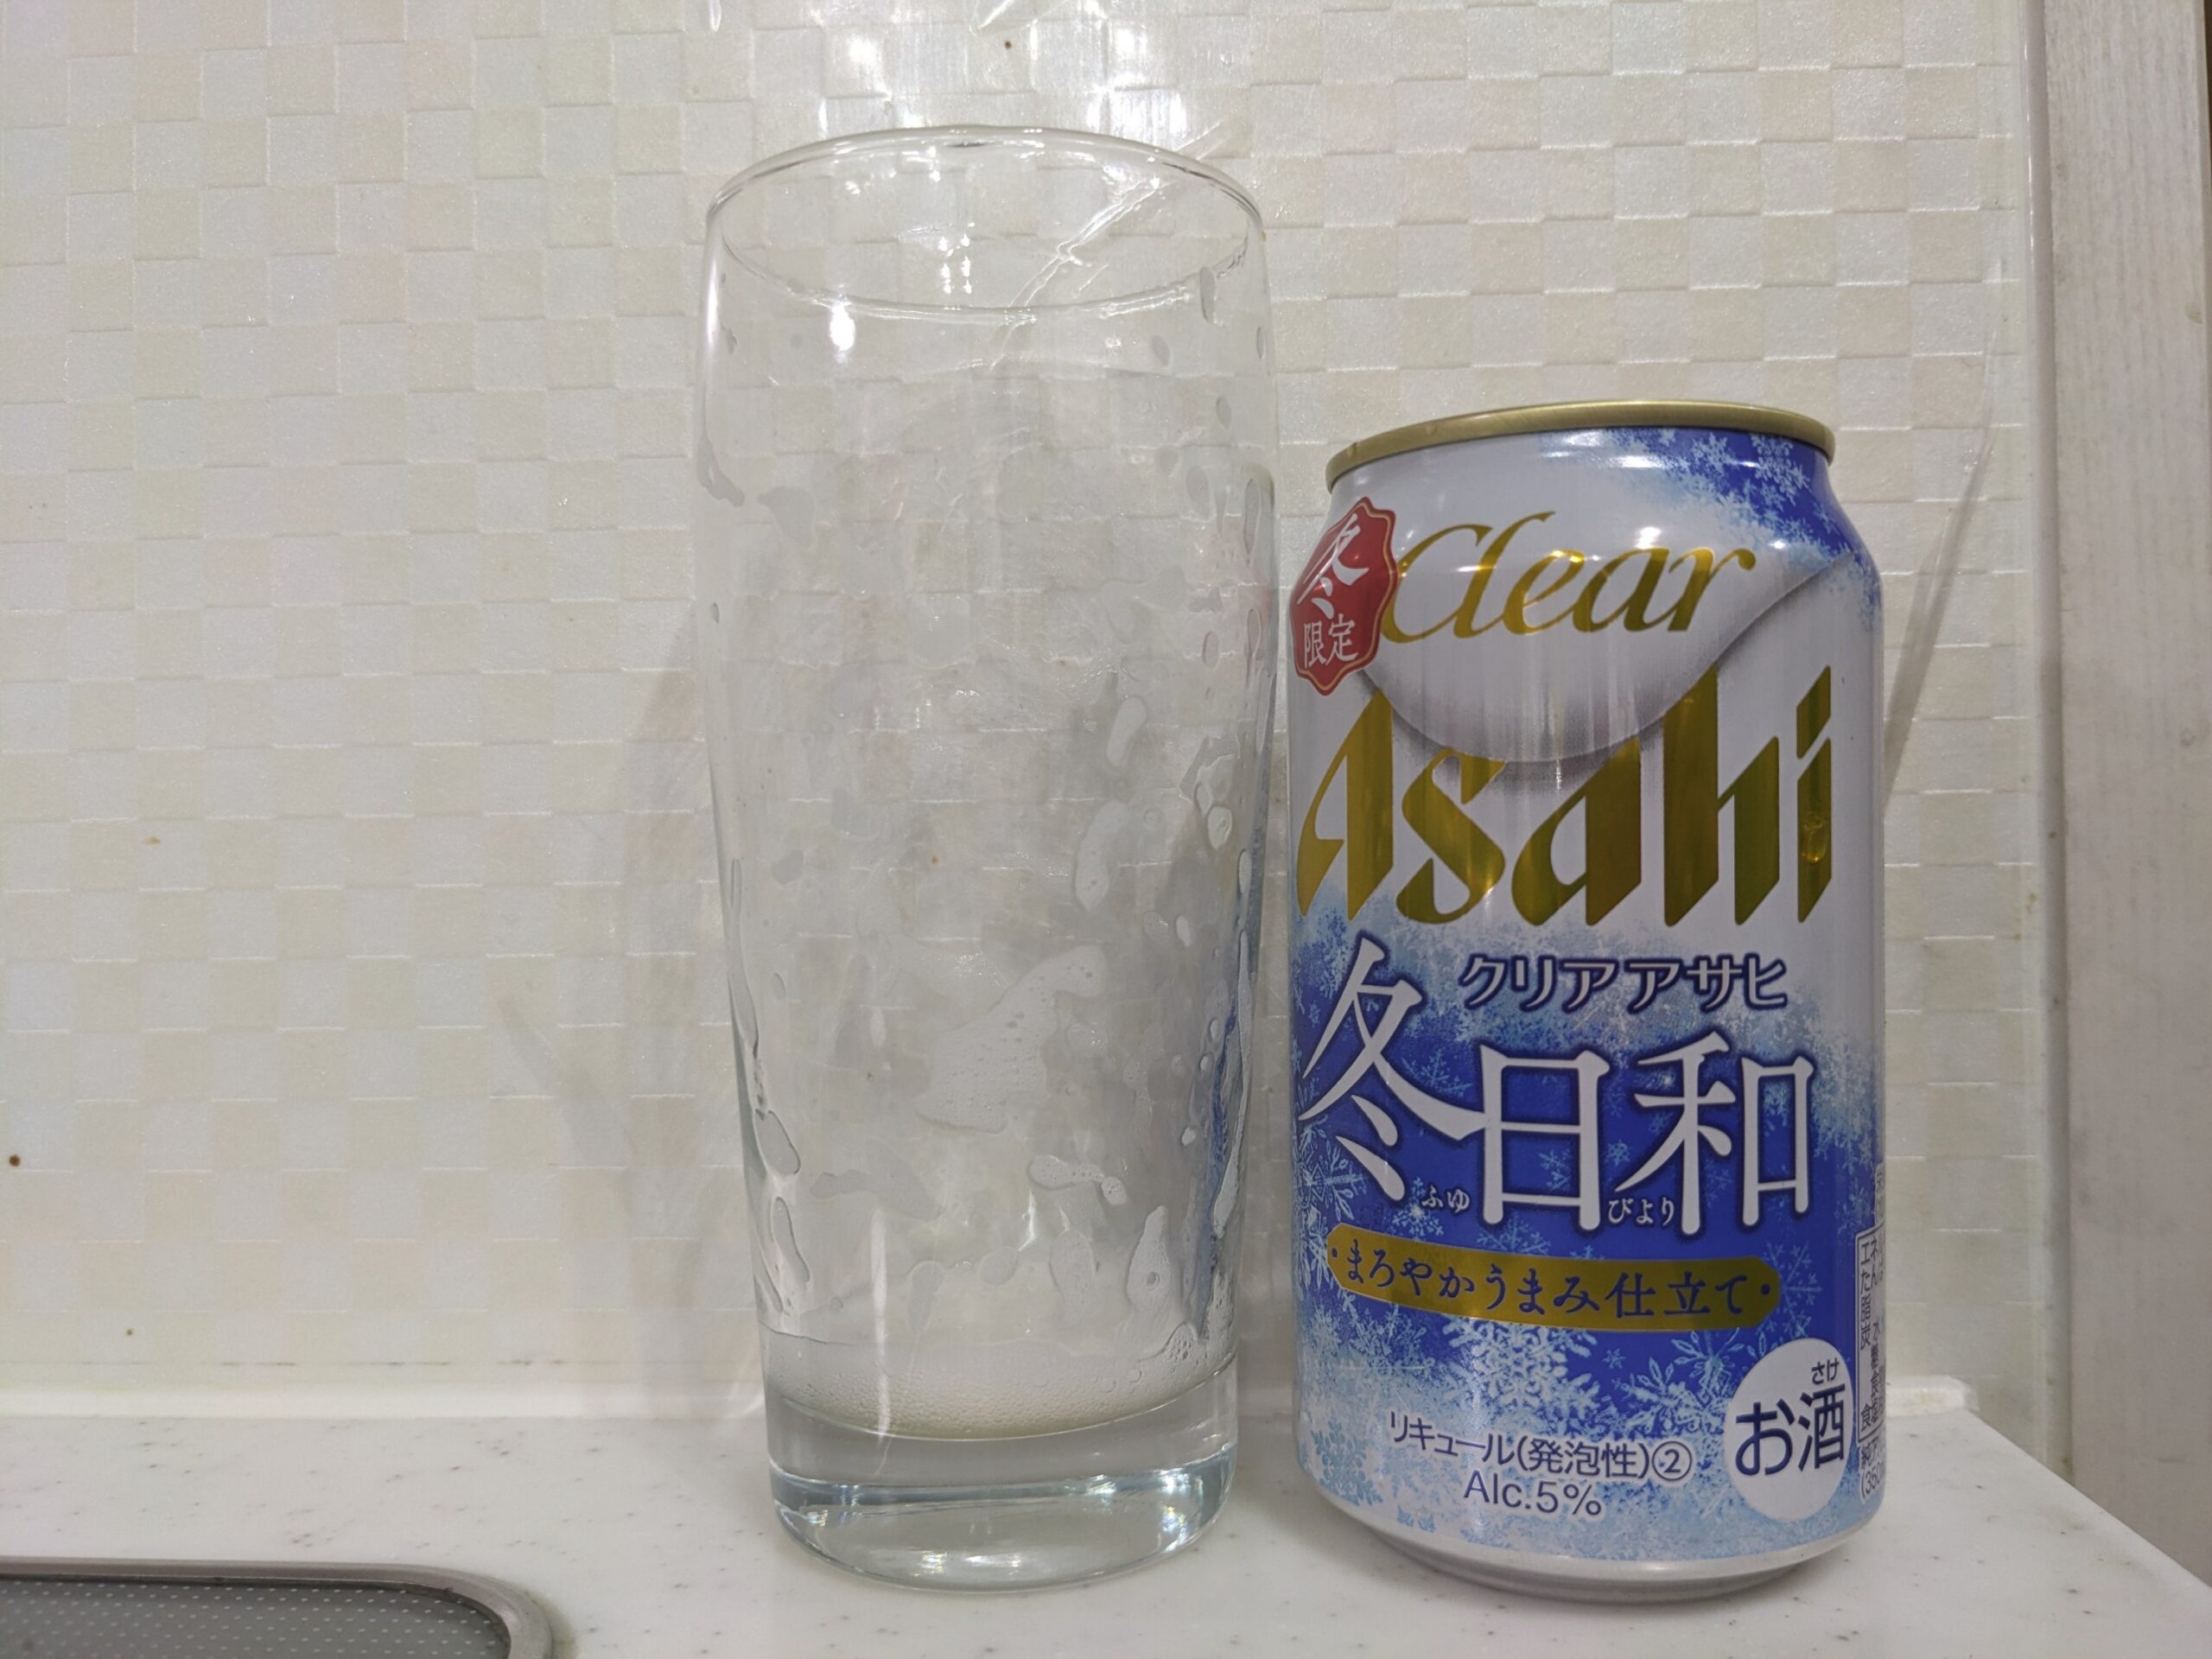 「クリアアサヒ冬日和」が飲み終えたグラスとその空き缶